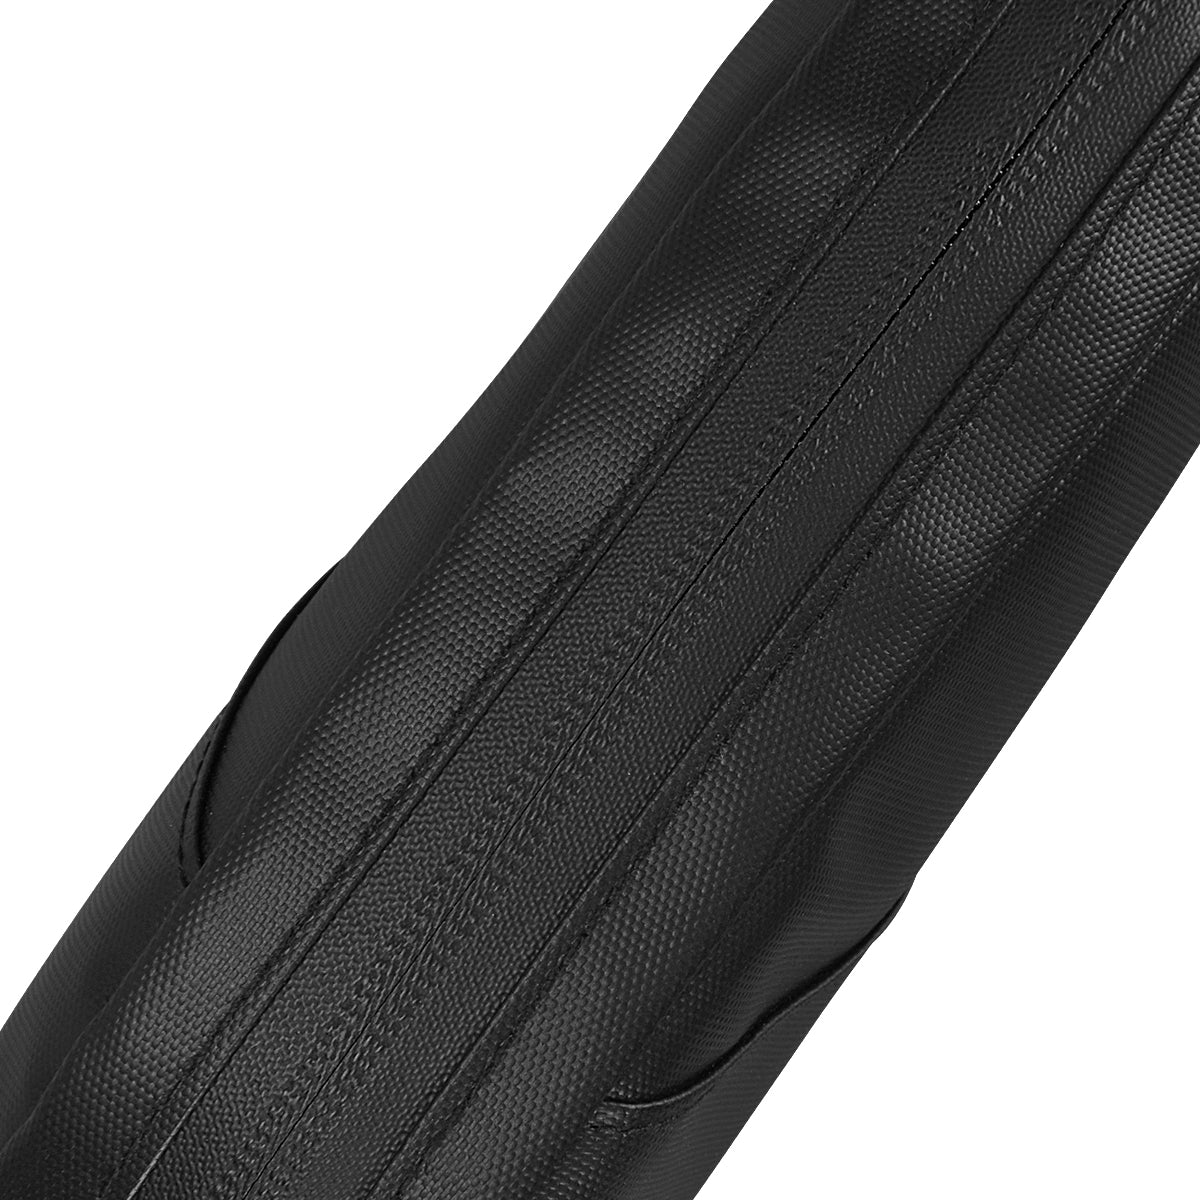 Solid Black Design Top Tube Bag